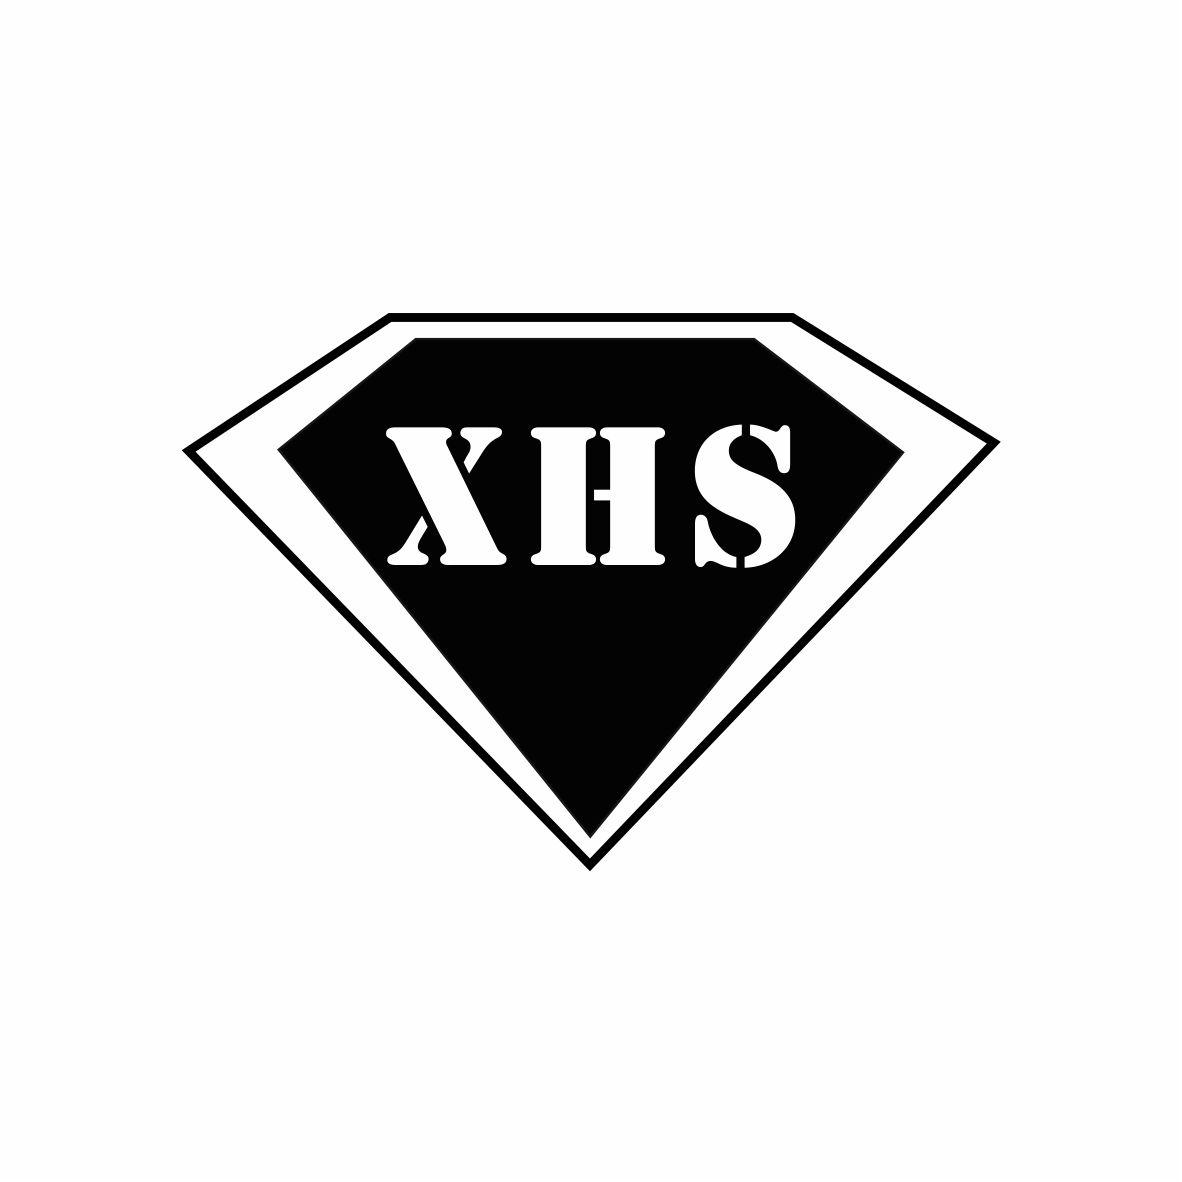 XHS